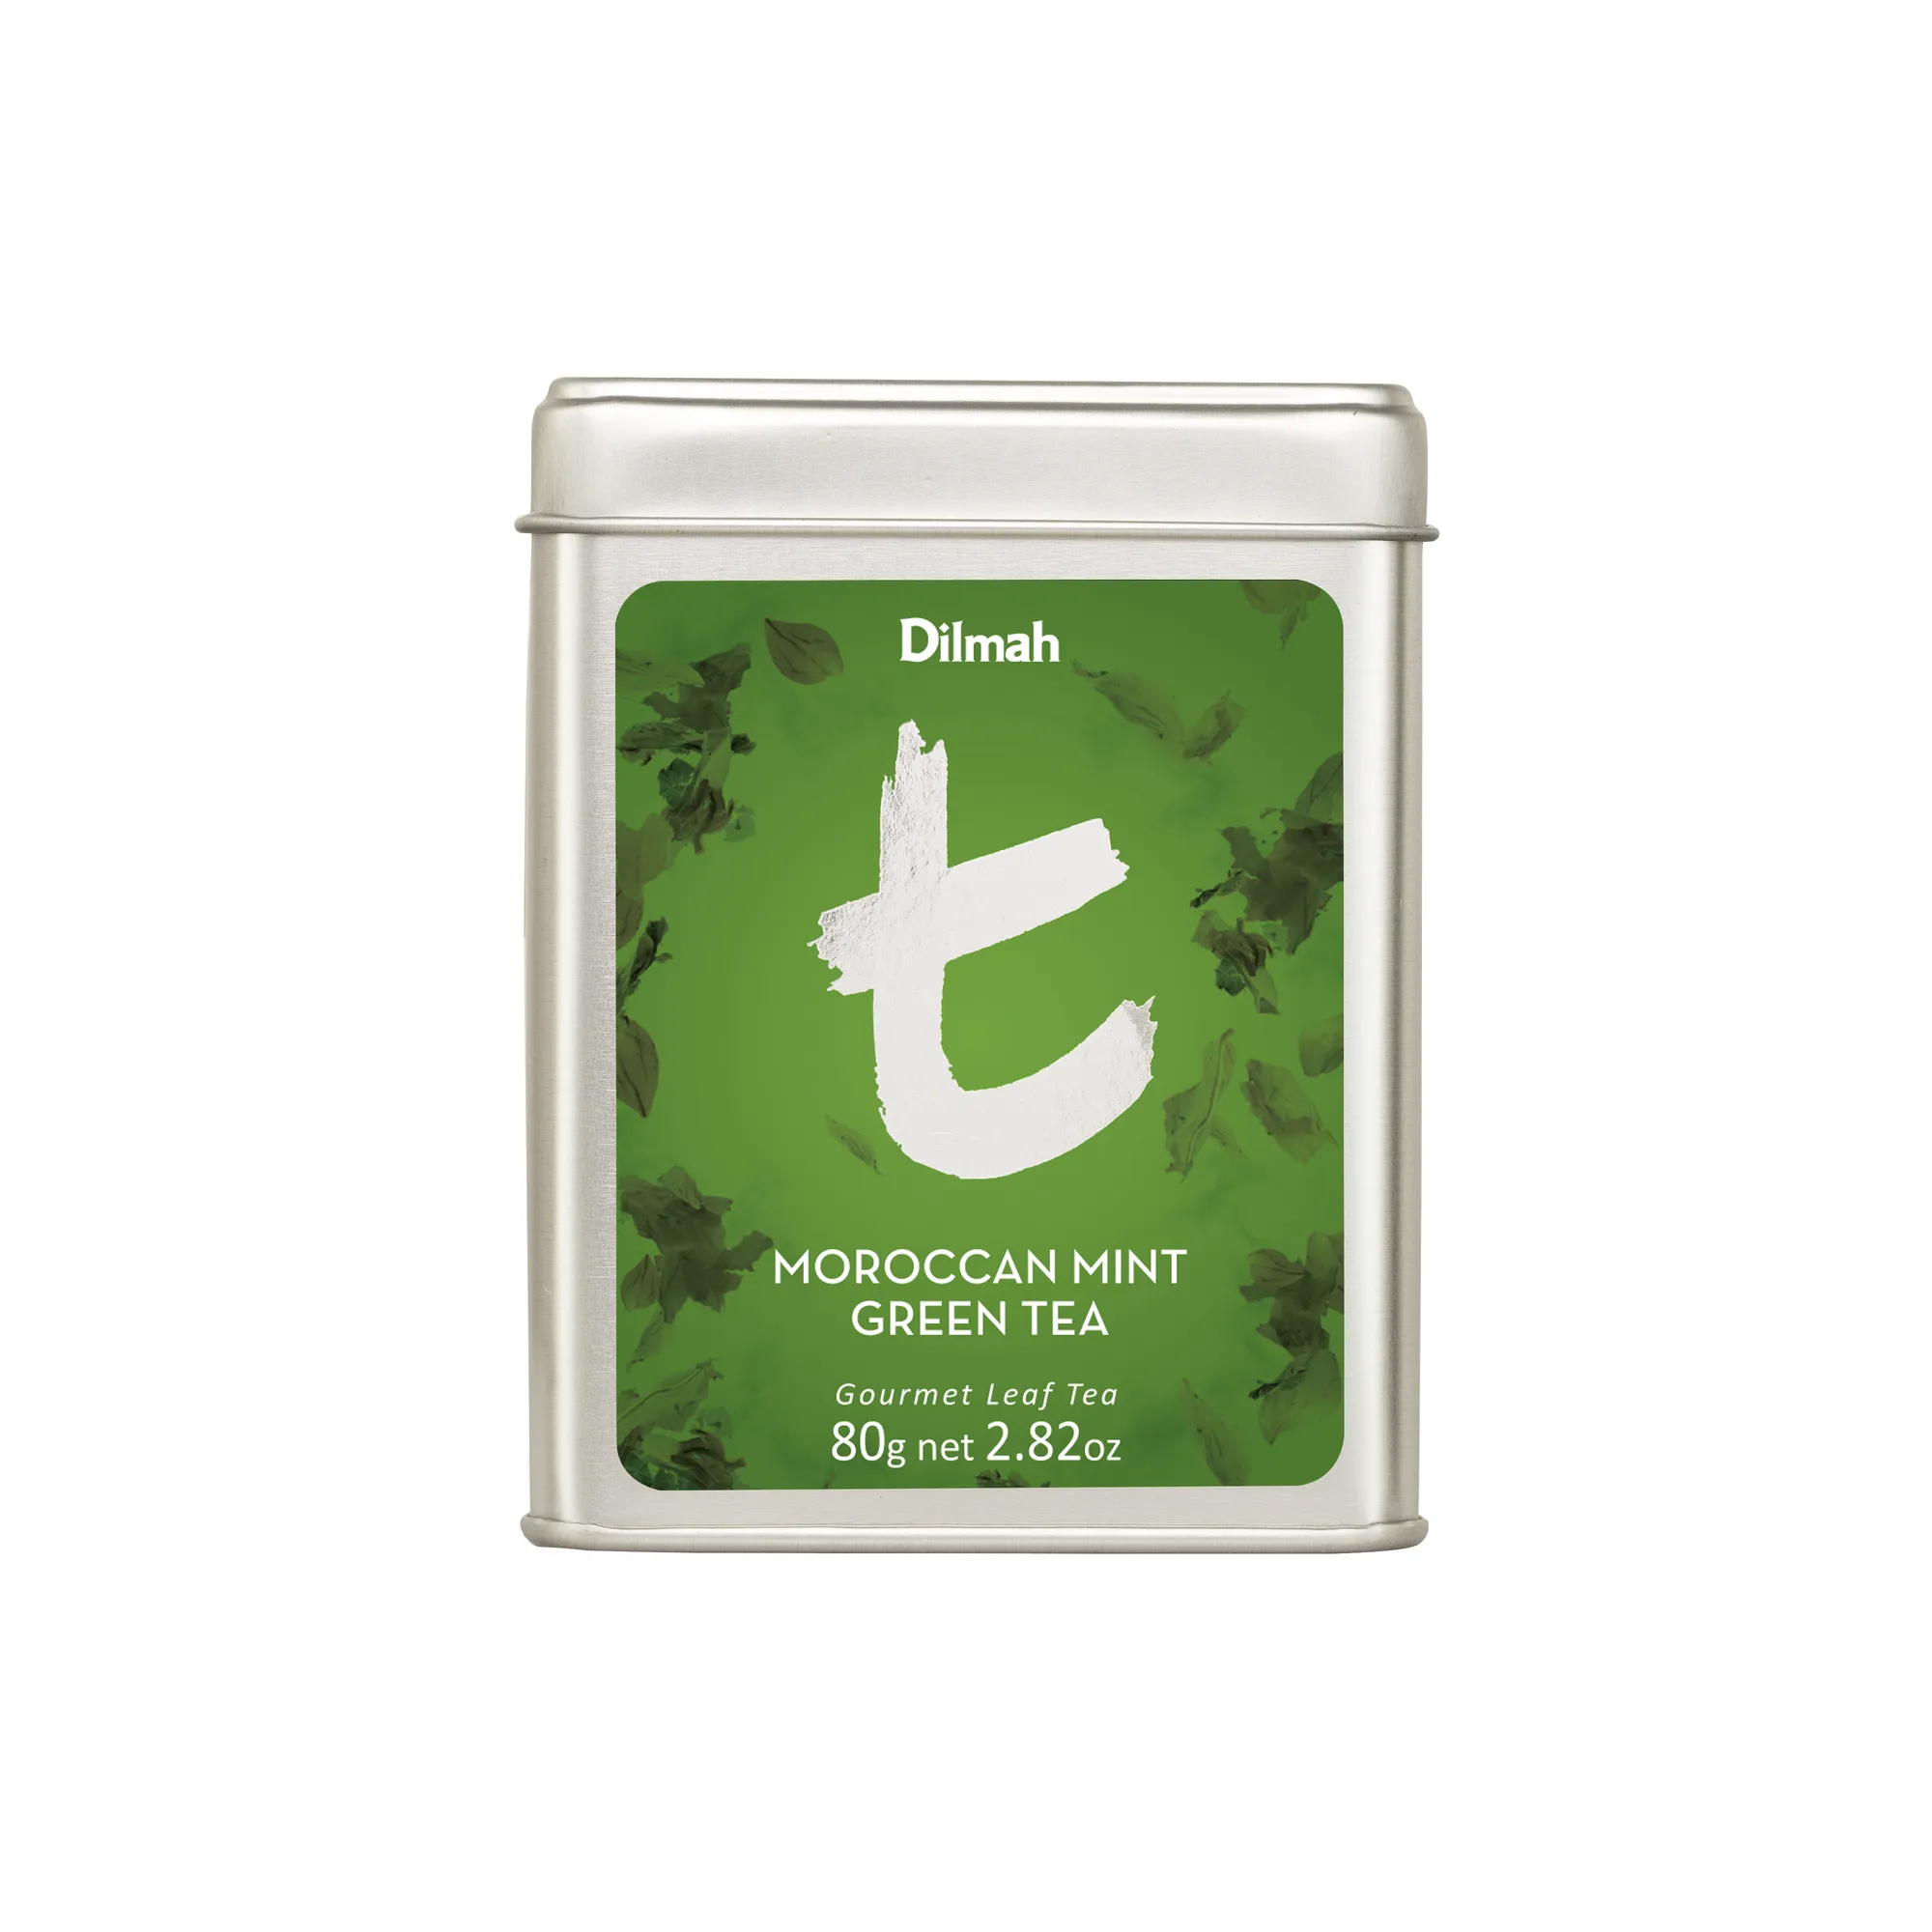 Loose leaf Moroccan Mint Green Tea in tin